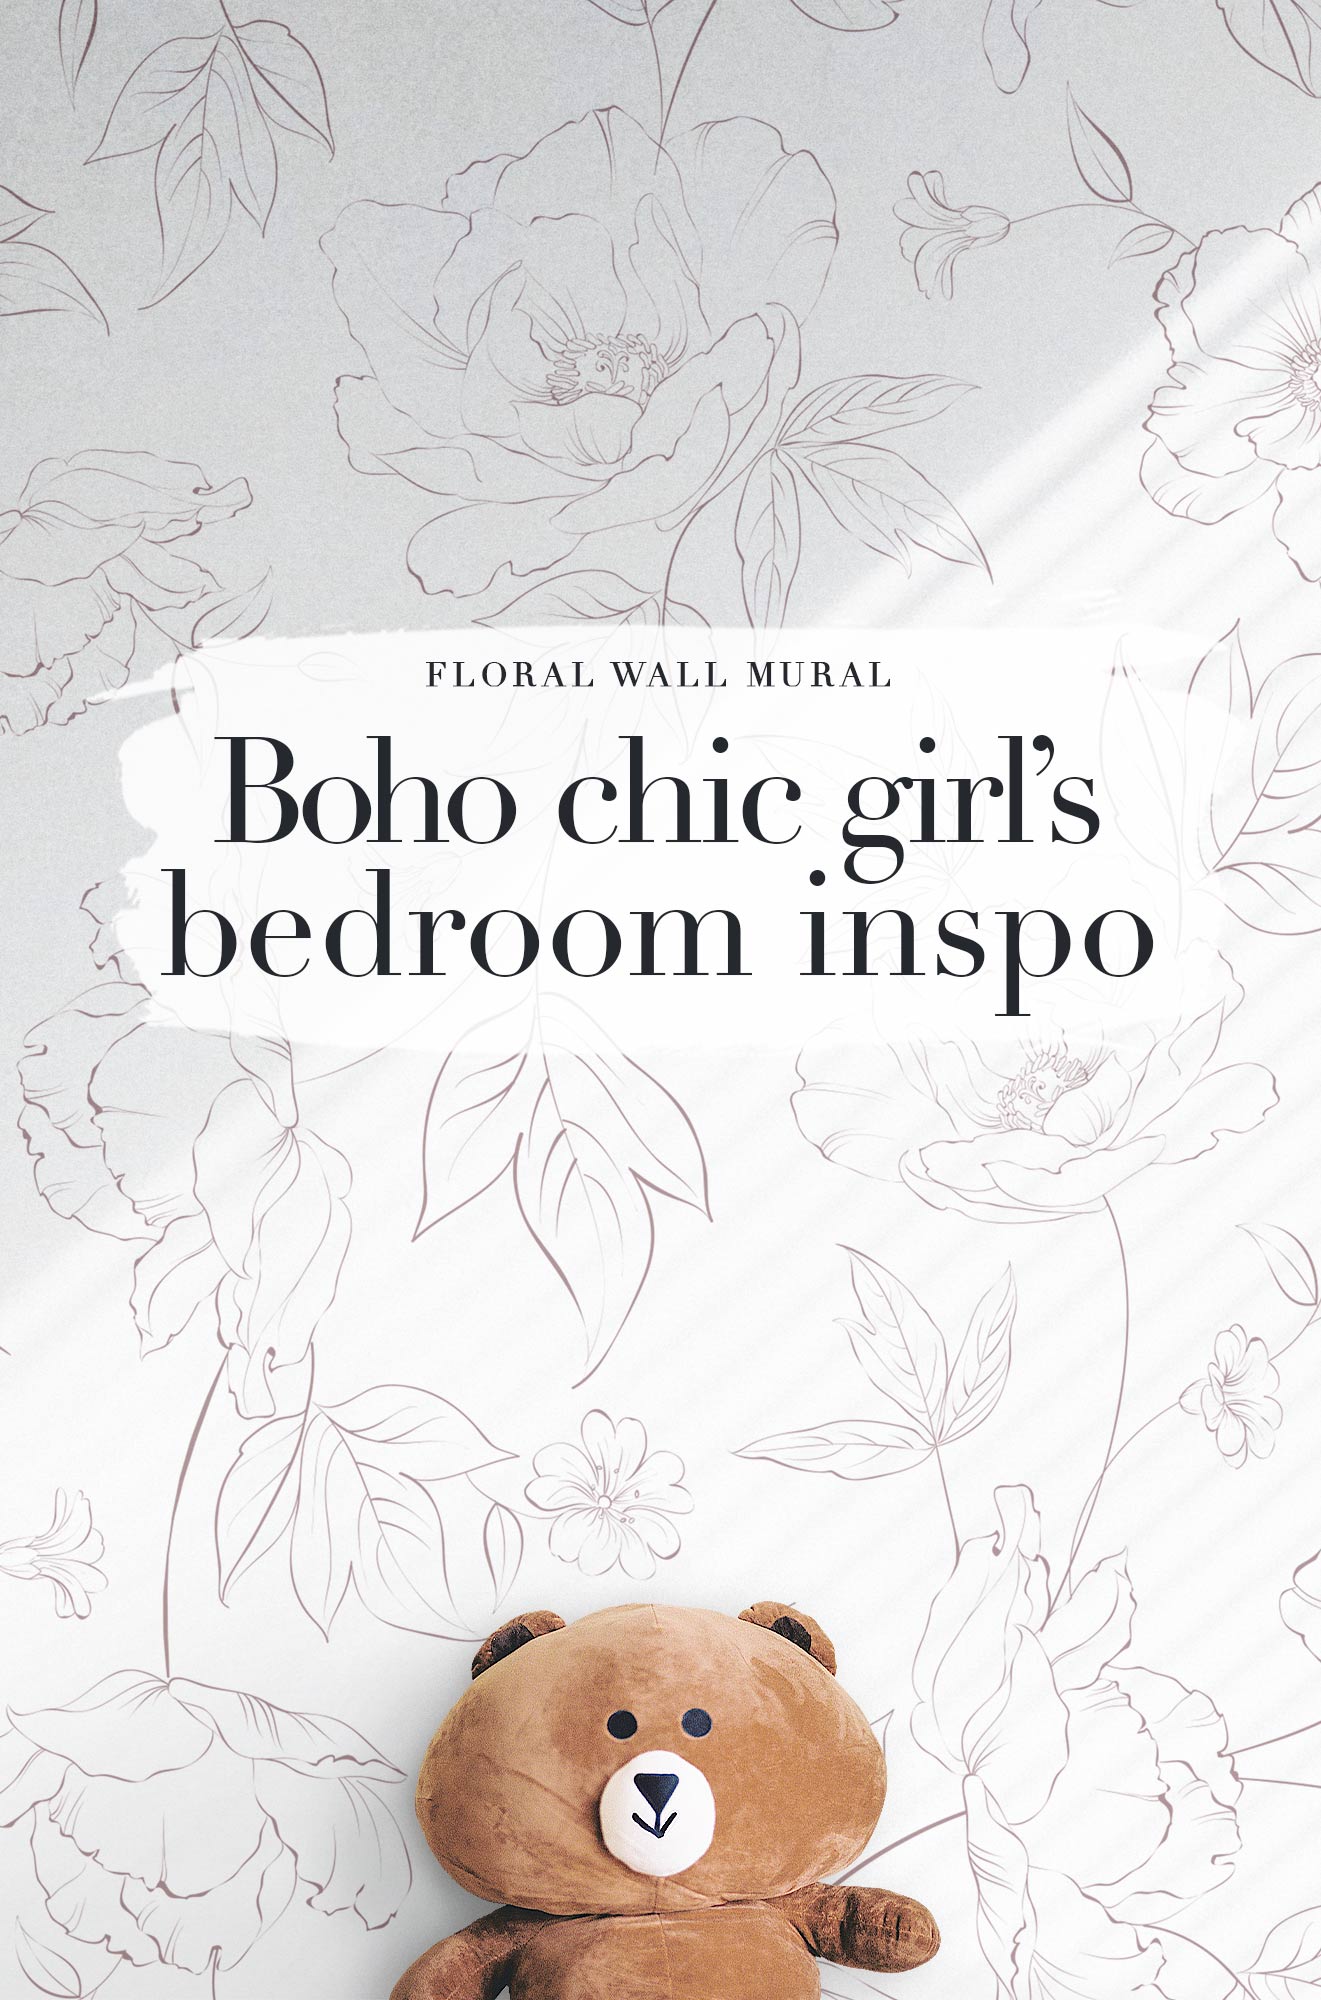 Boho Chic Girl's bedroom inspo. Delicate floral wallpaper